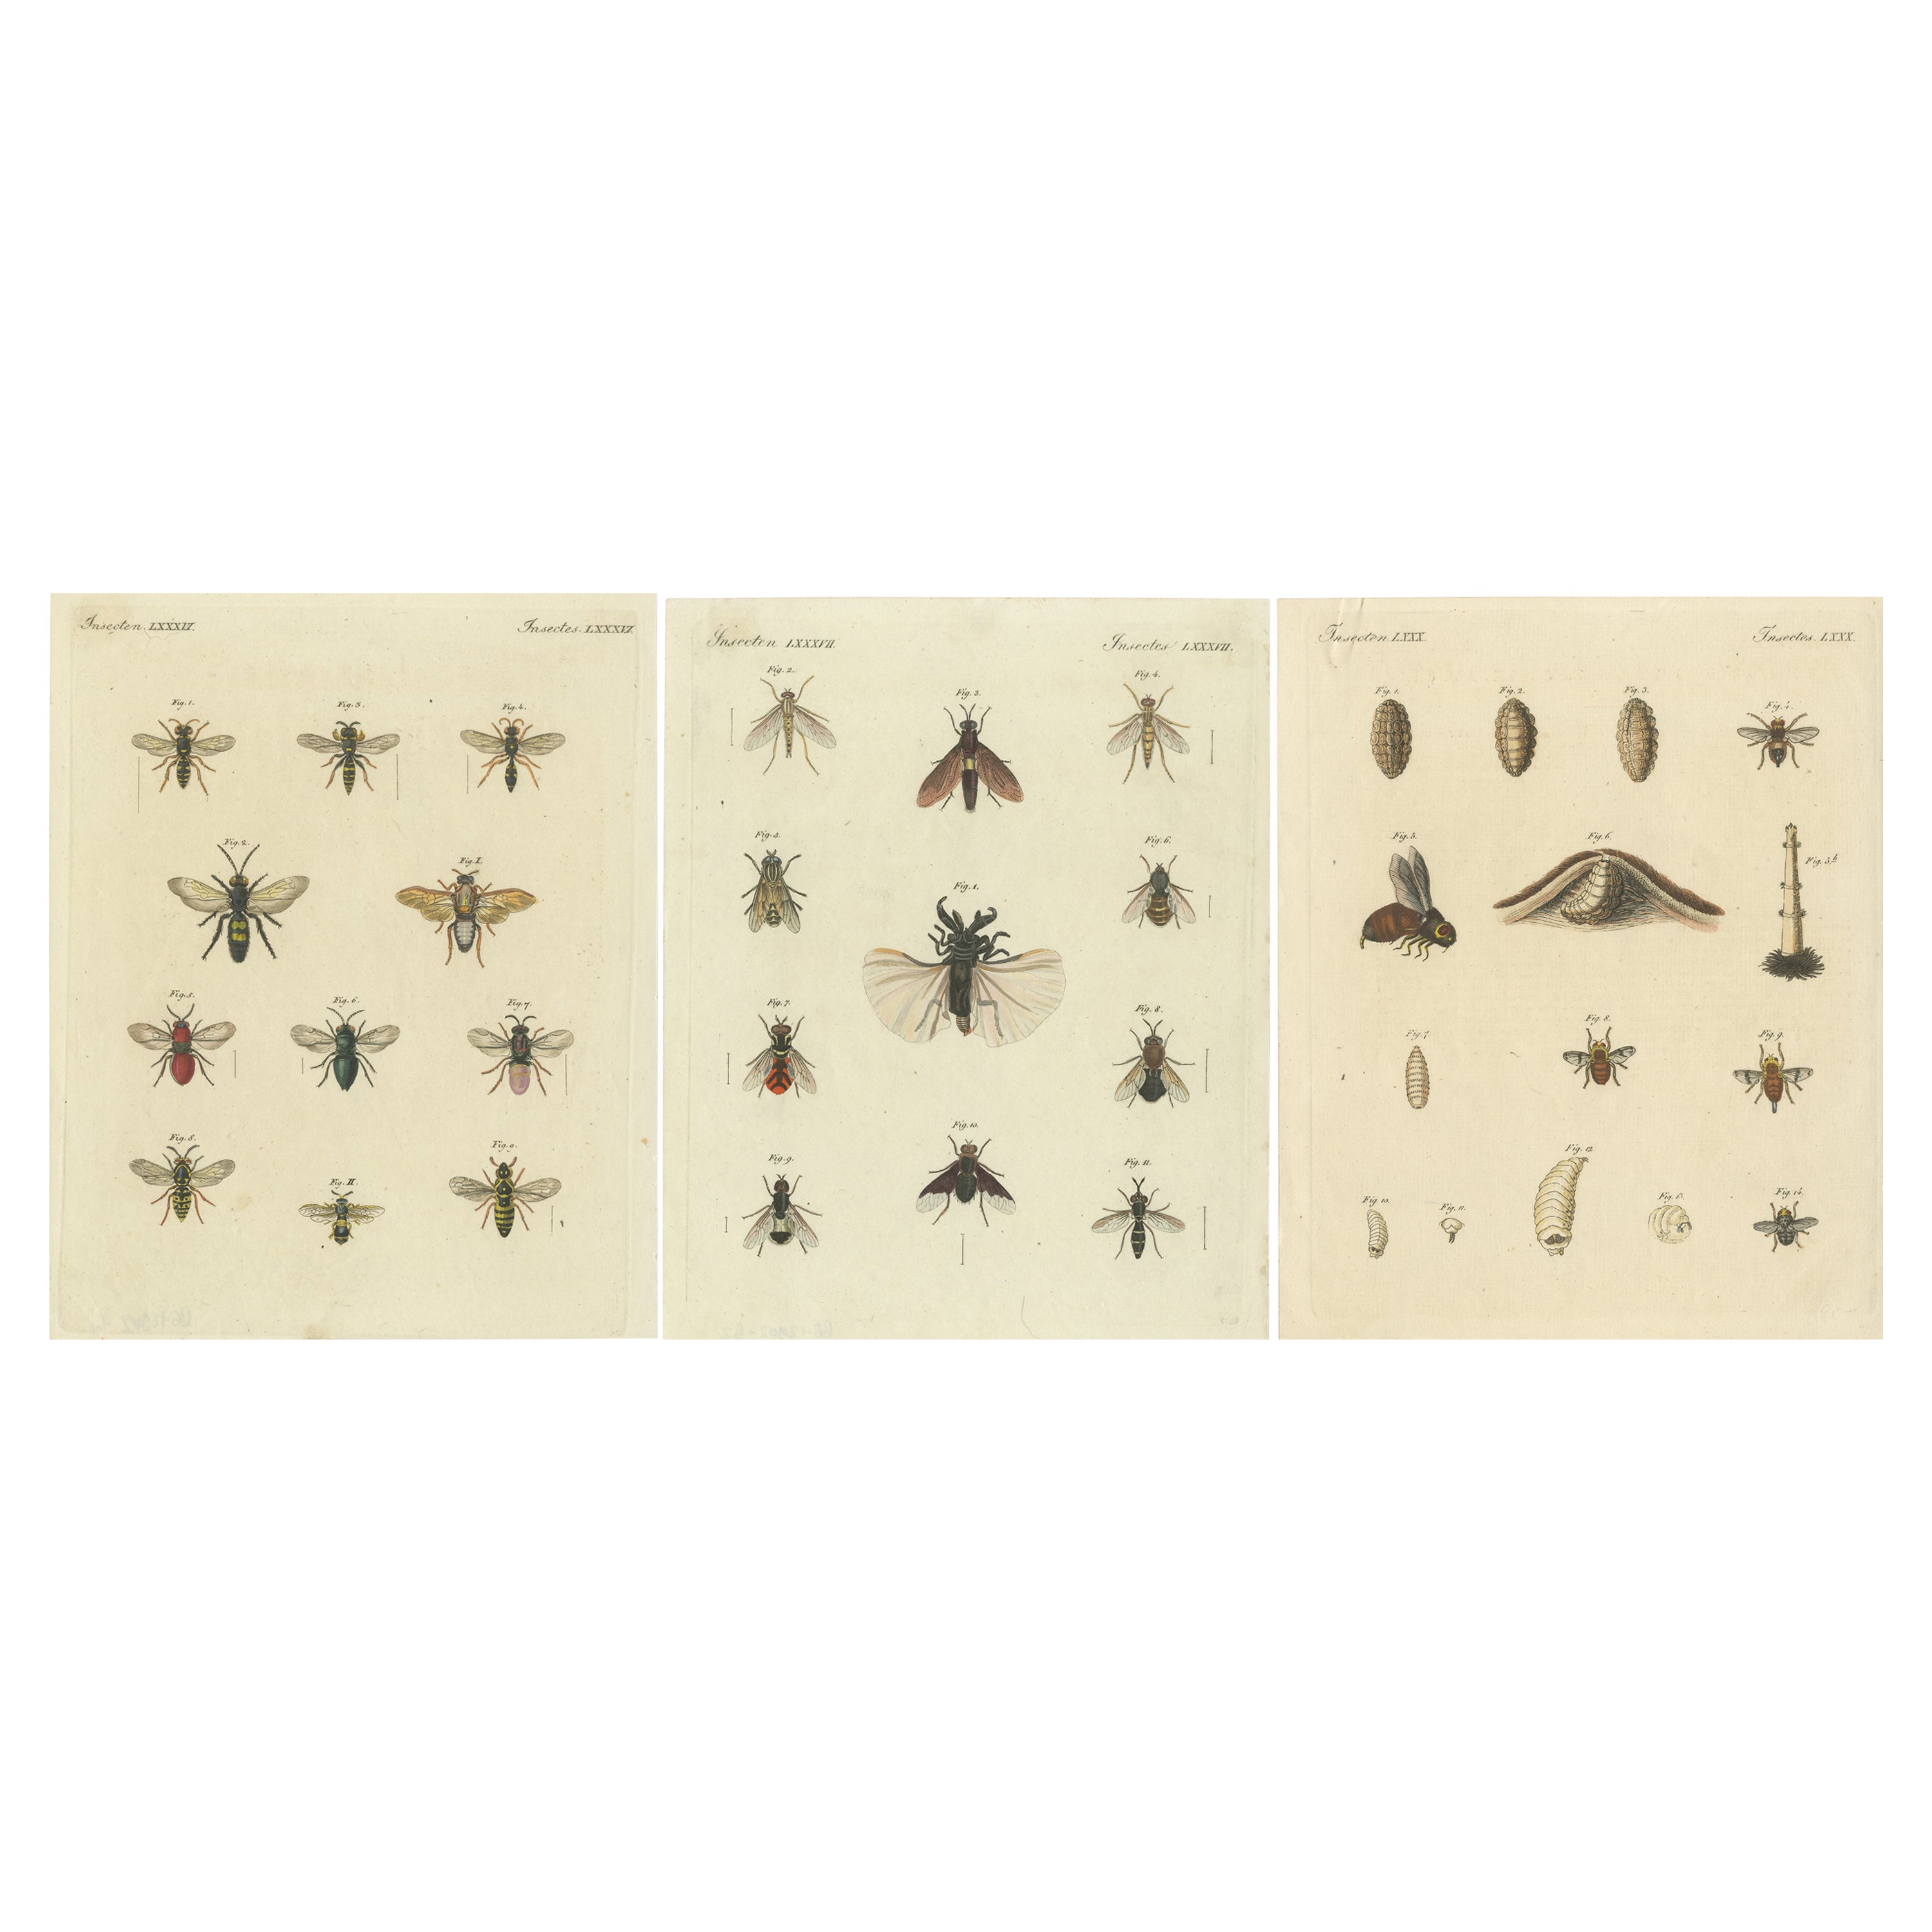 Conjunto de 3 grabados antiguos de varios insectos, incluidas avispas y moscas en venta